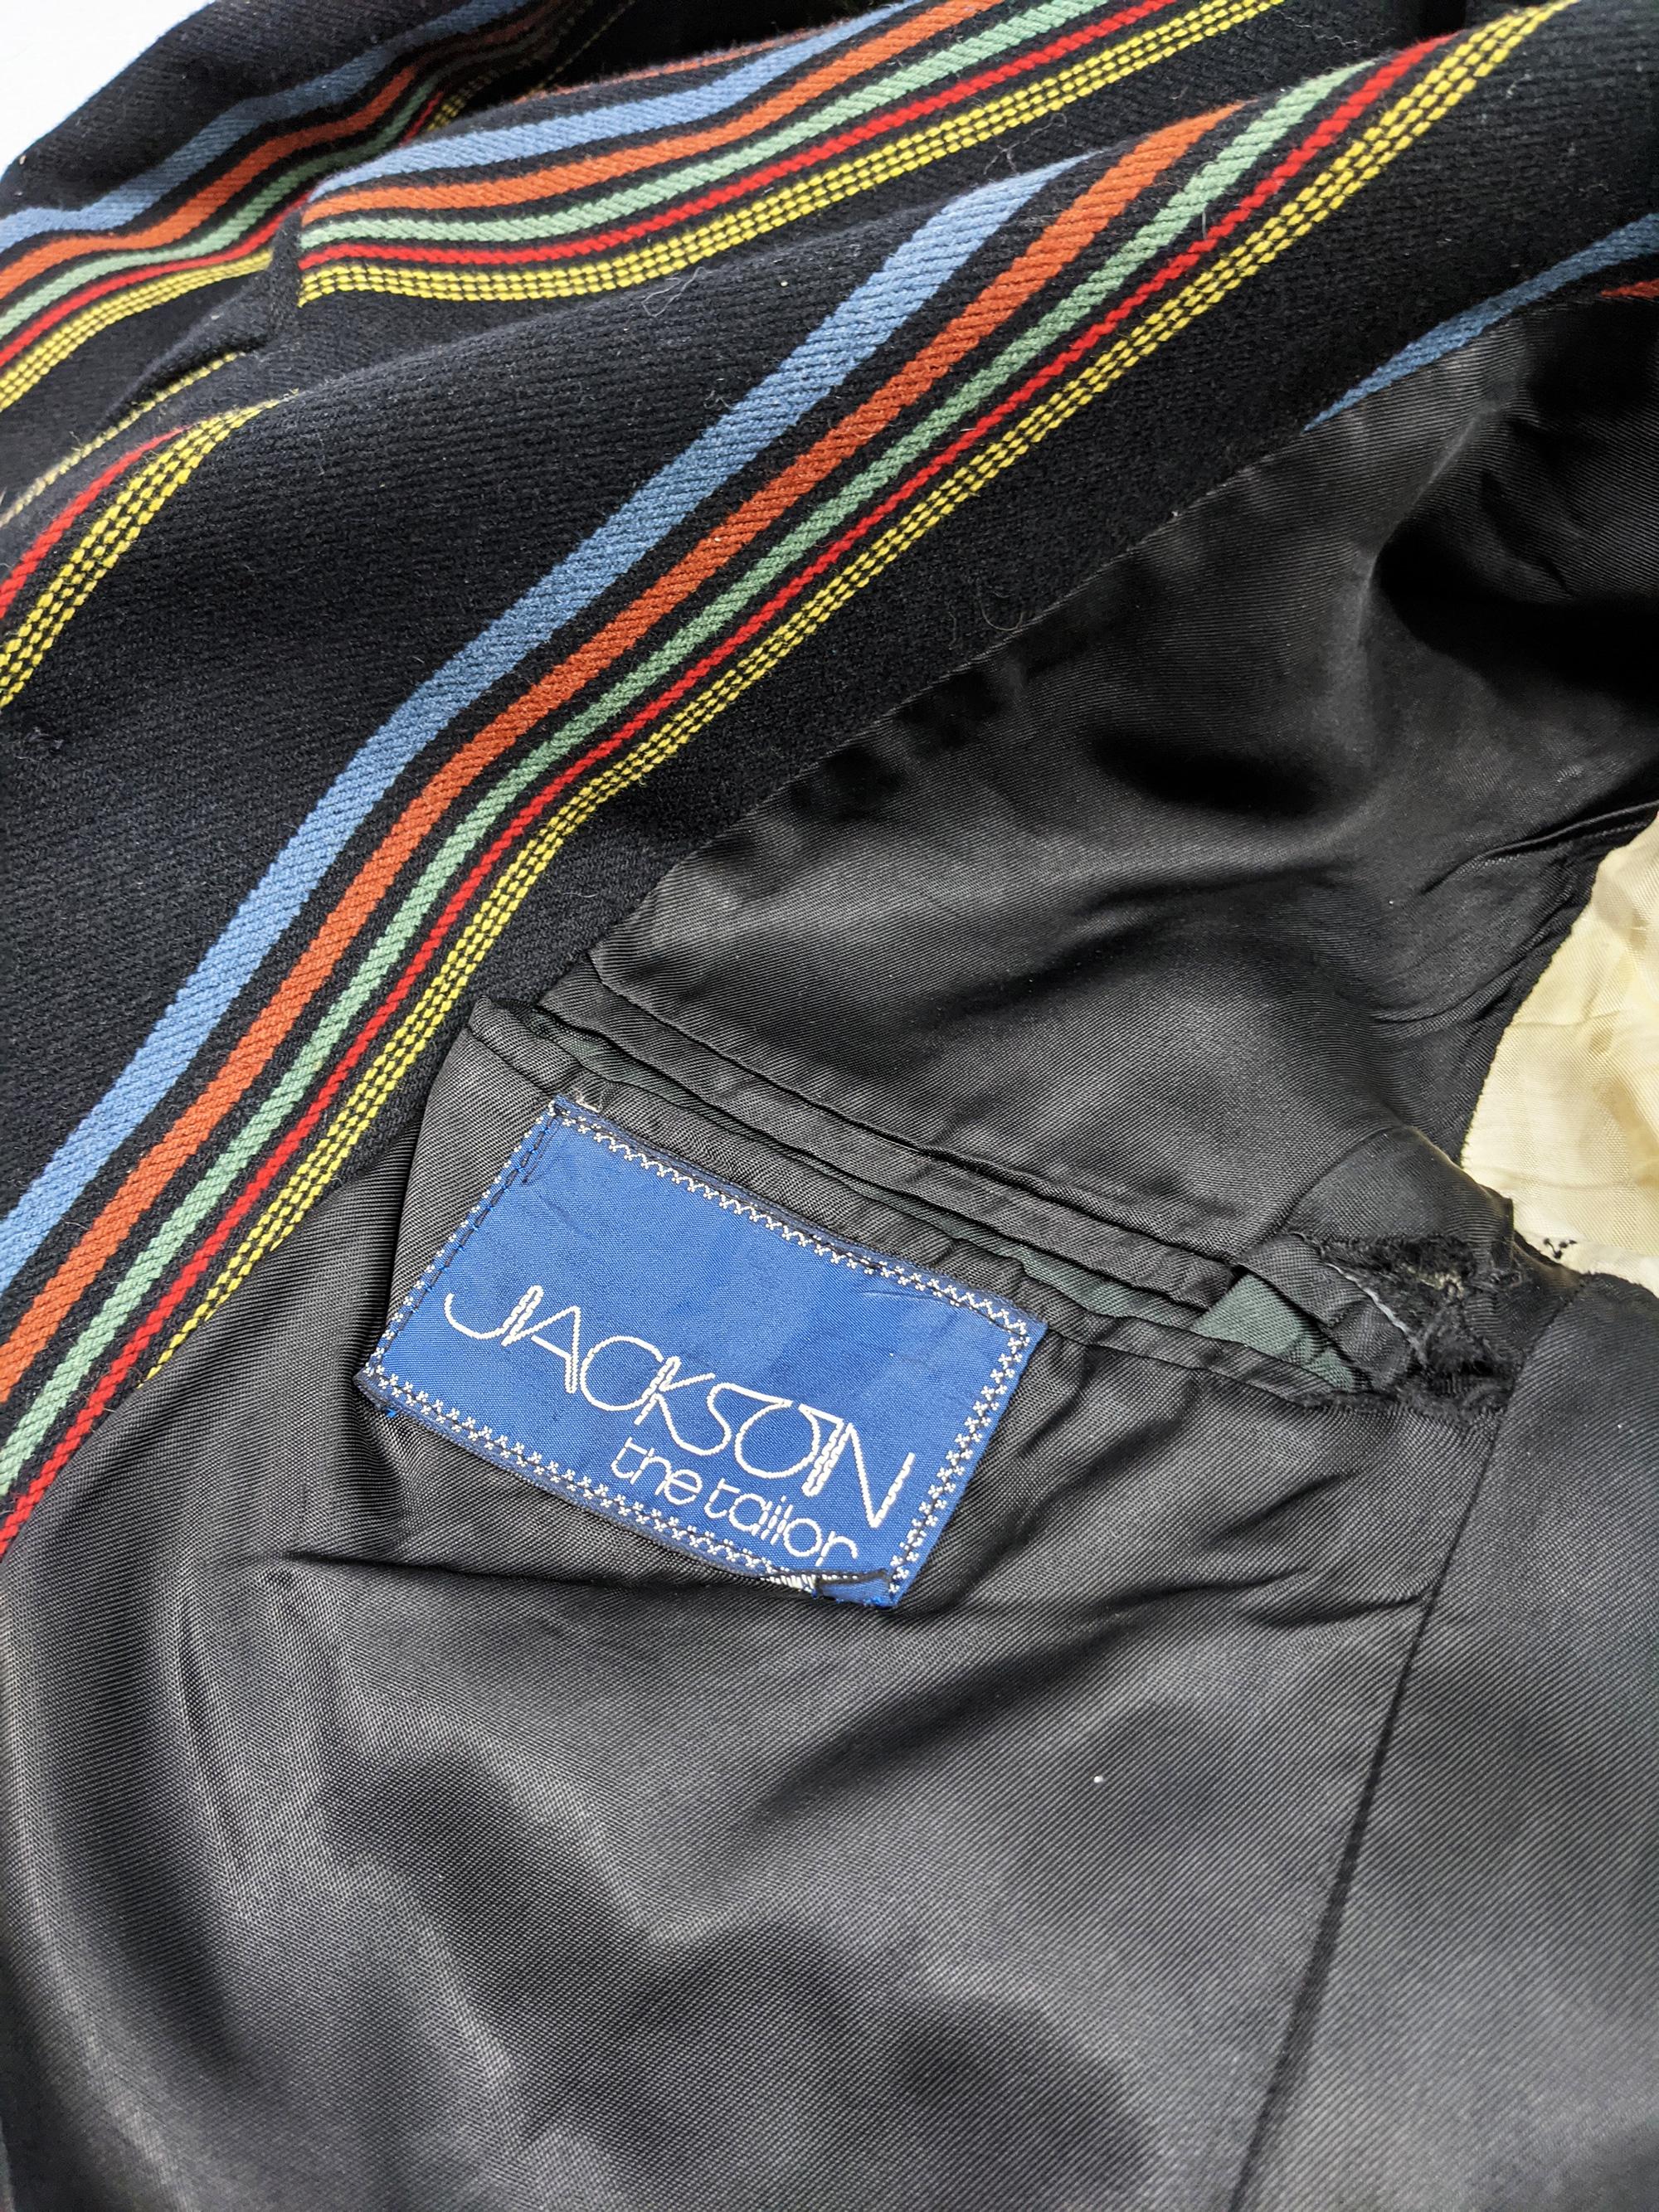 1970s Mens Vintage Striped Blazer Jacket For Sale 1